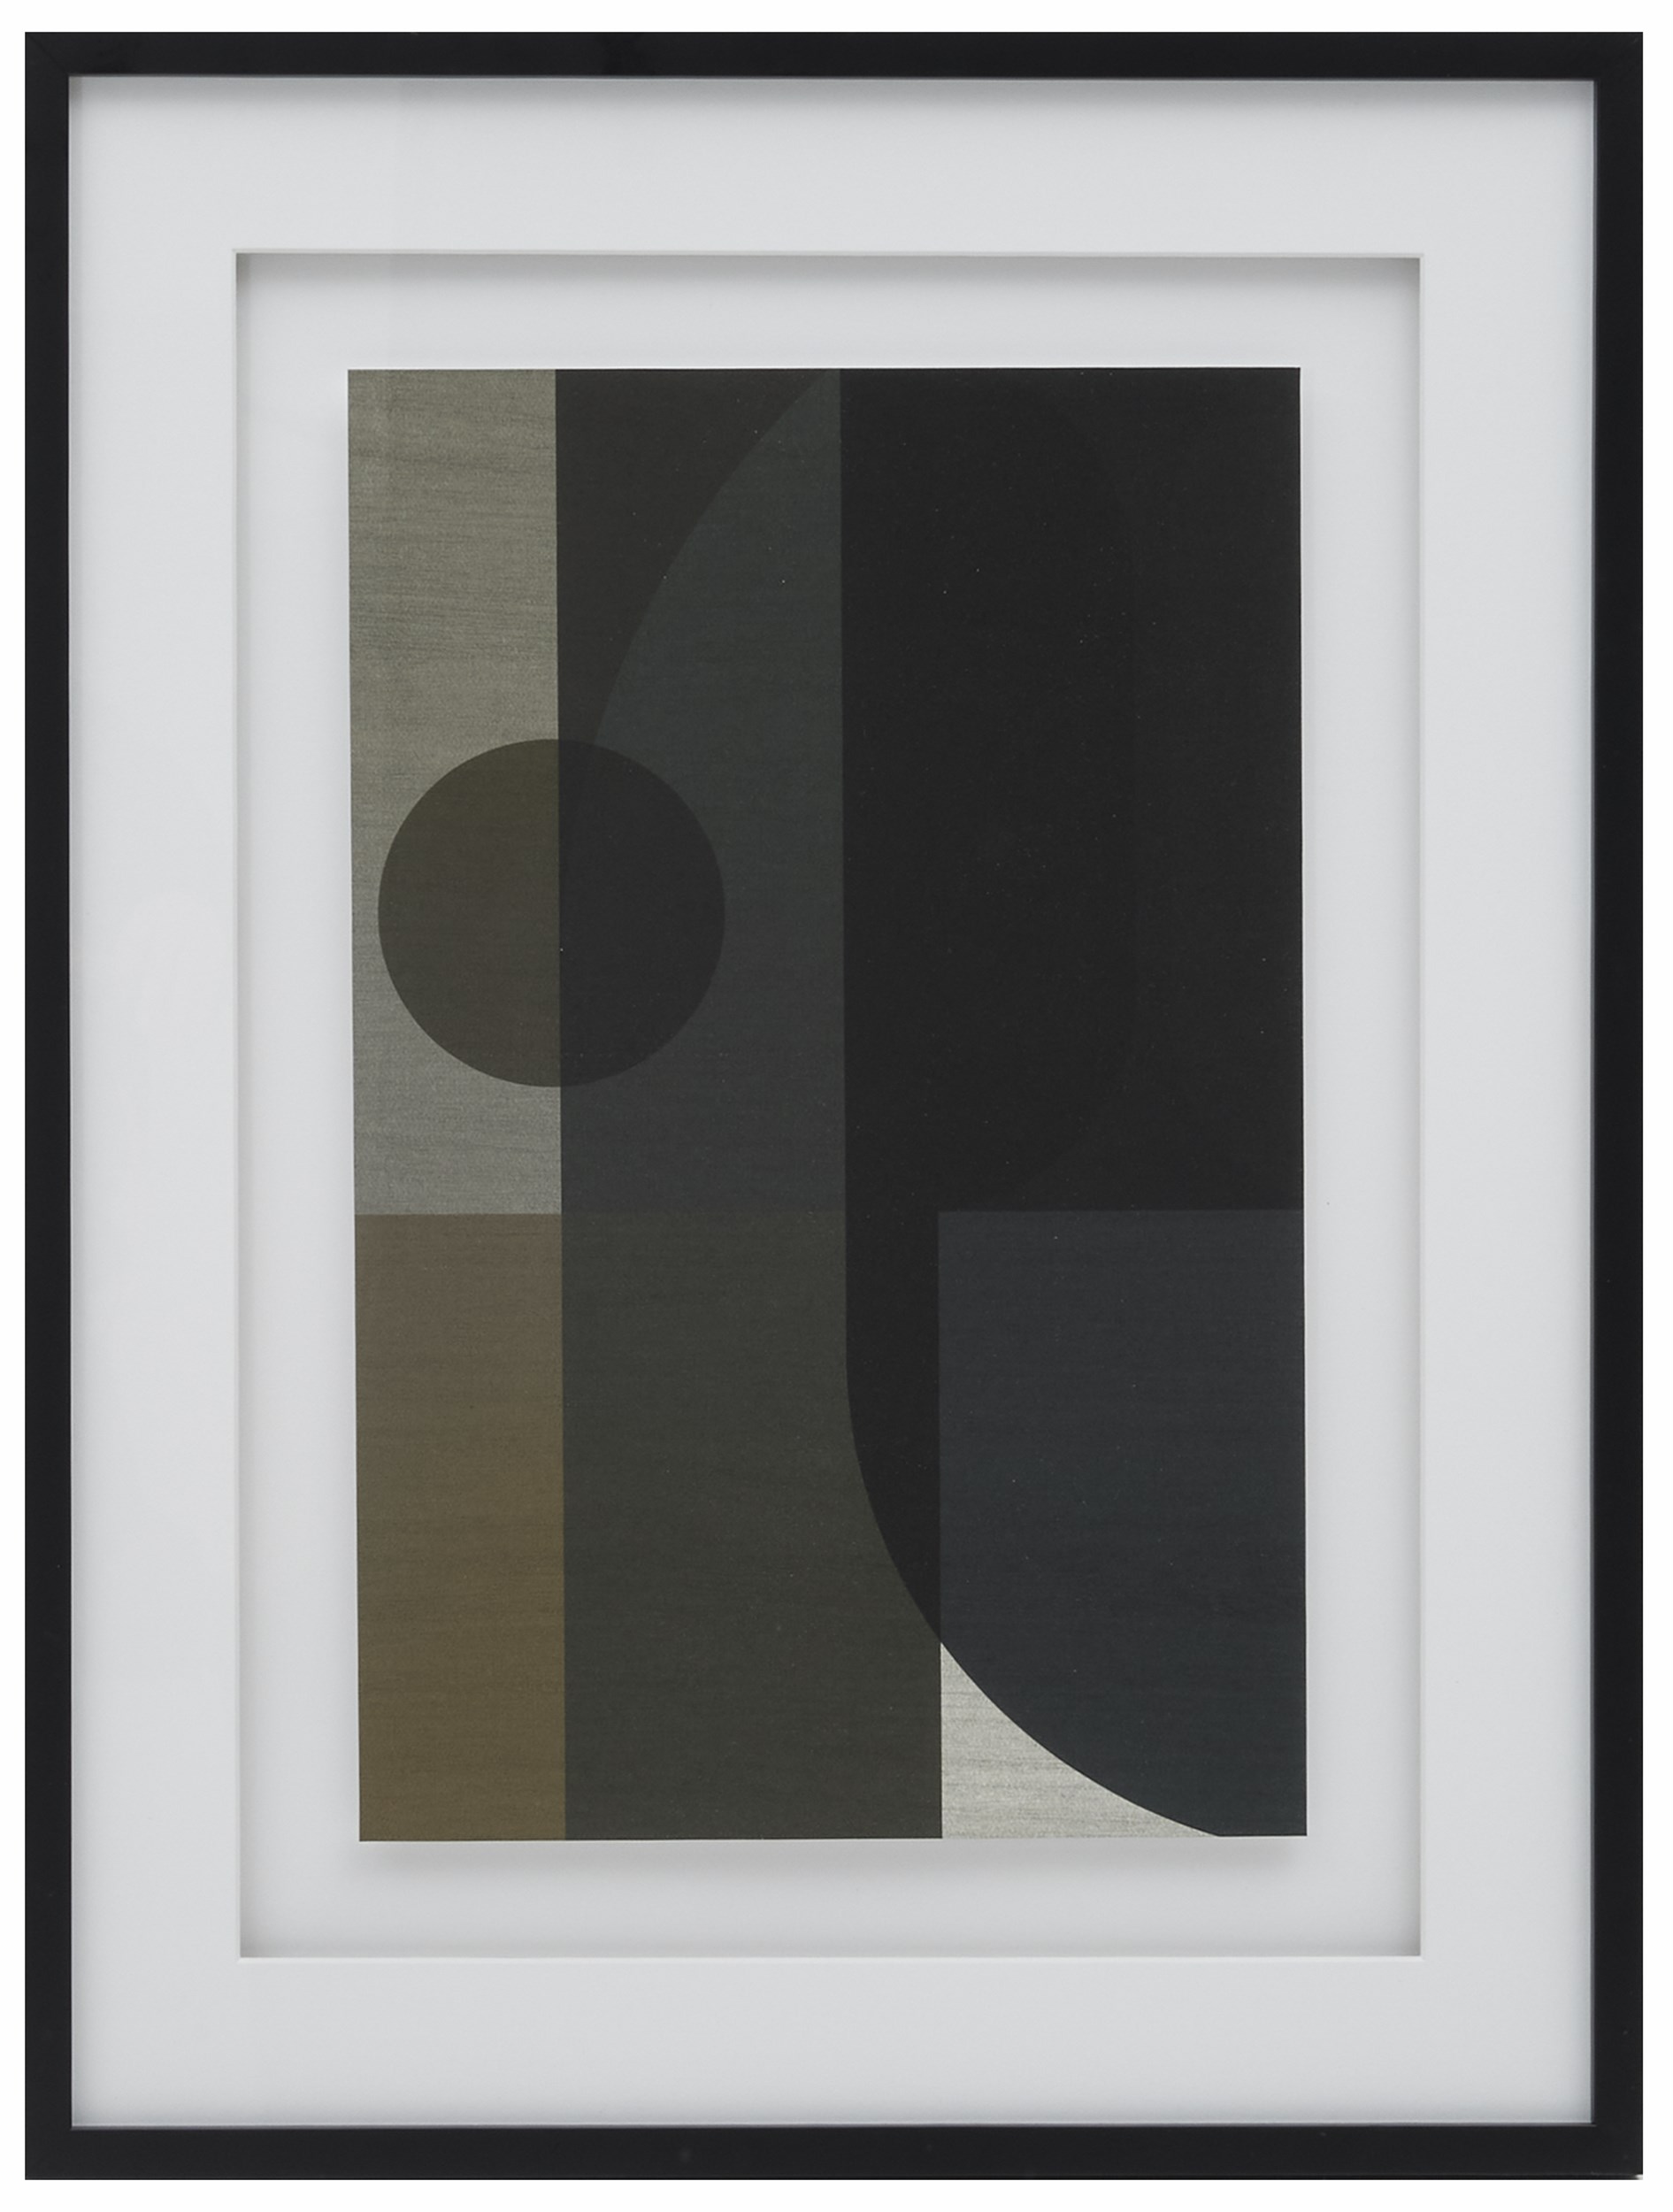 Pillar affisch med ram, stor 60 x 80 x 3 cm - Grön/svart/brun/blå och vit, Abstrakt stapelmotiv och med svart ram